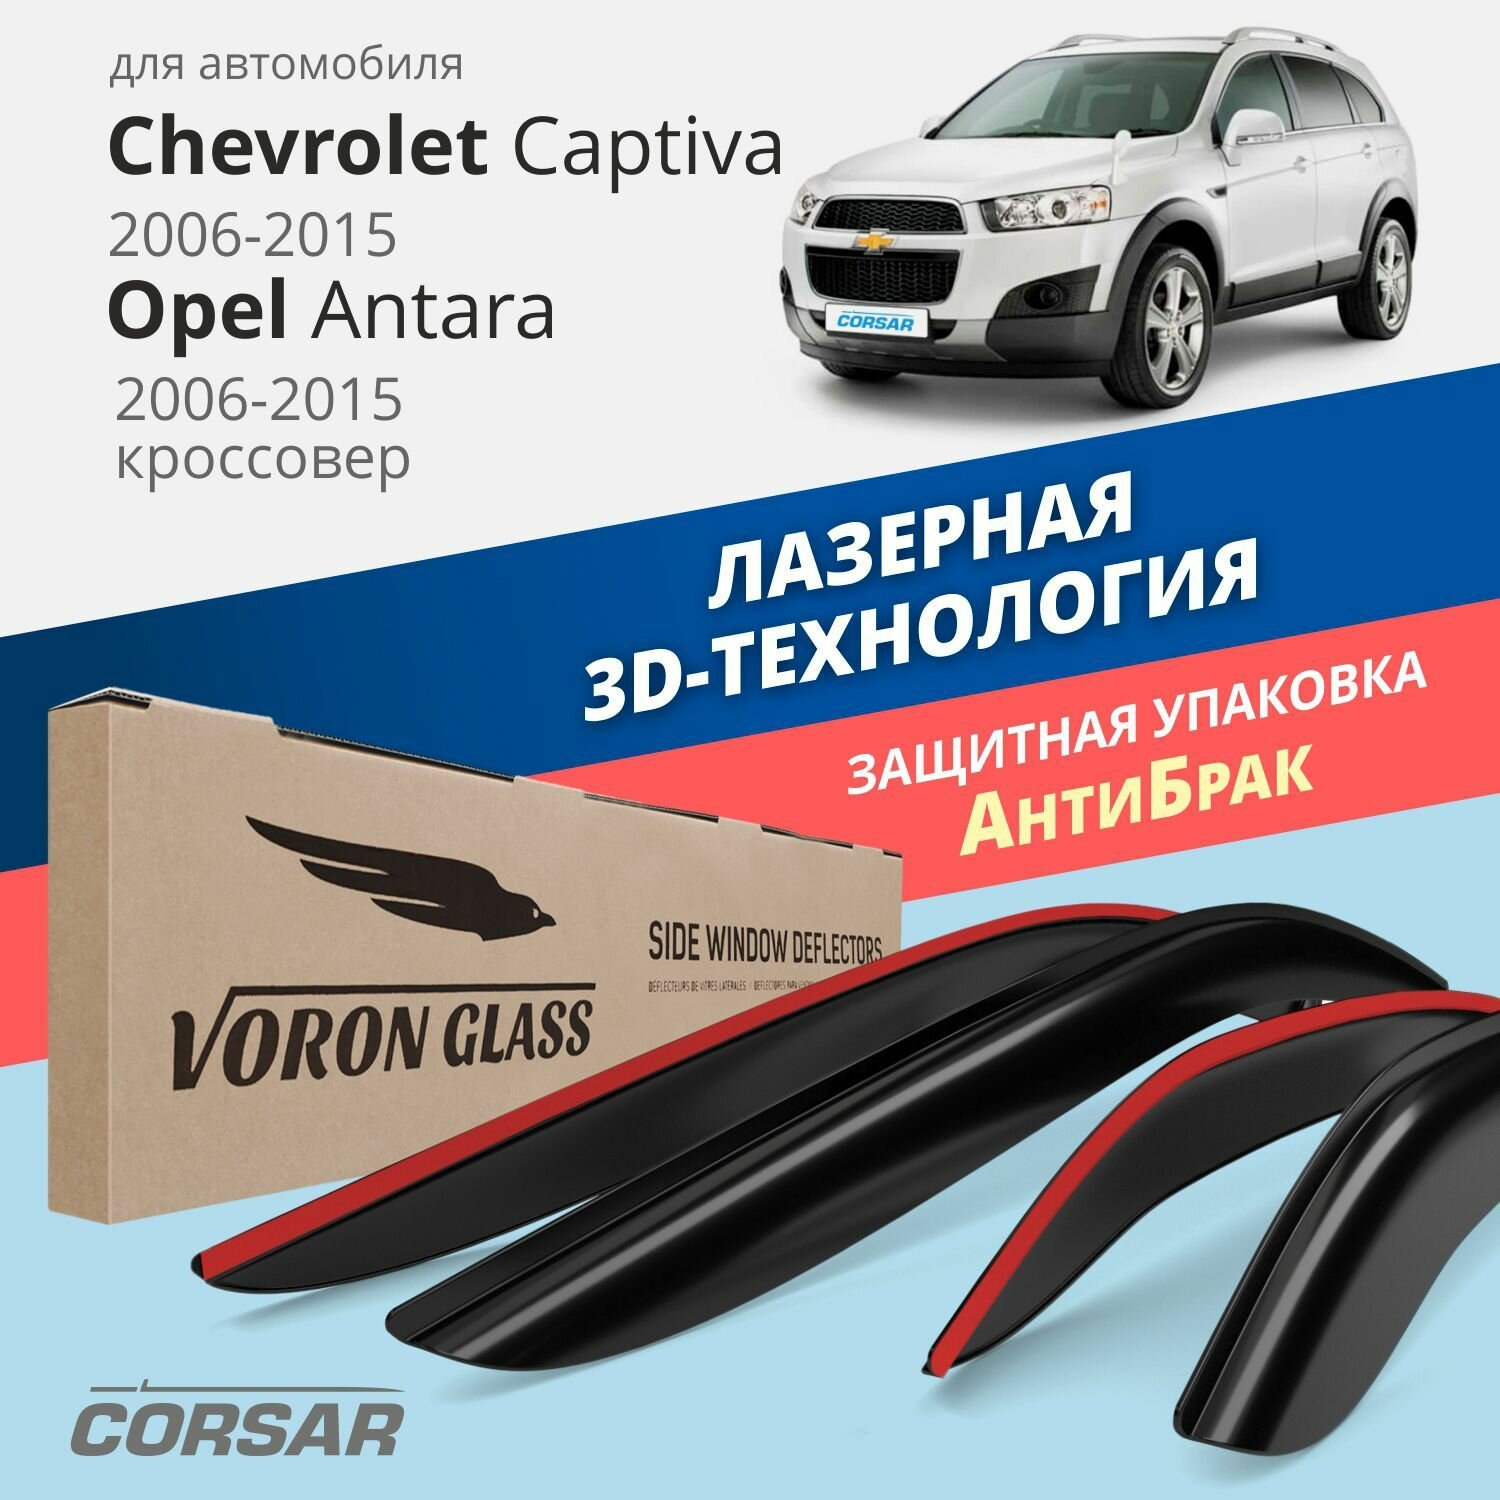 Дефлекторы окон Voron Glass серия Corsar для Chevrolet Captiva 2006-2015 / Opel Antara 2006-2015 накладные 4 шт.